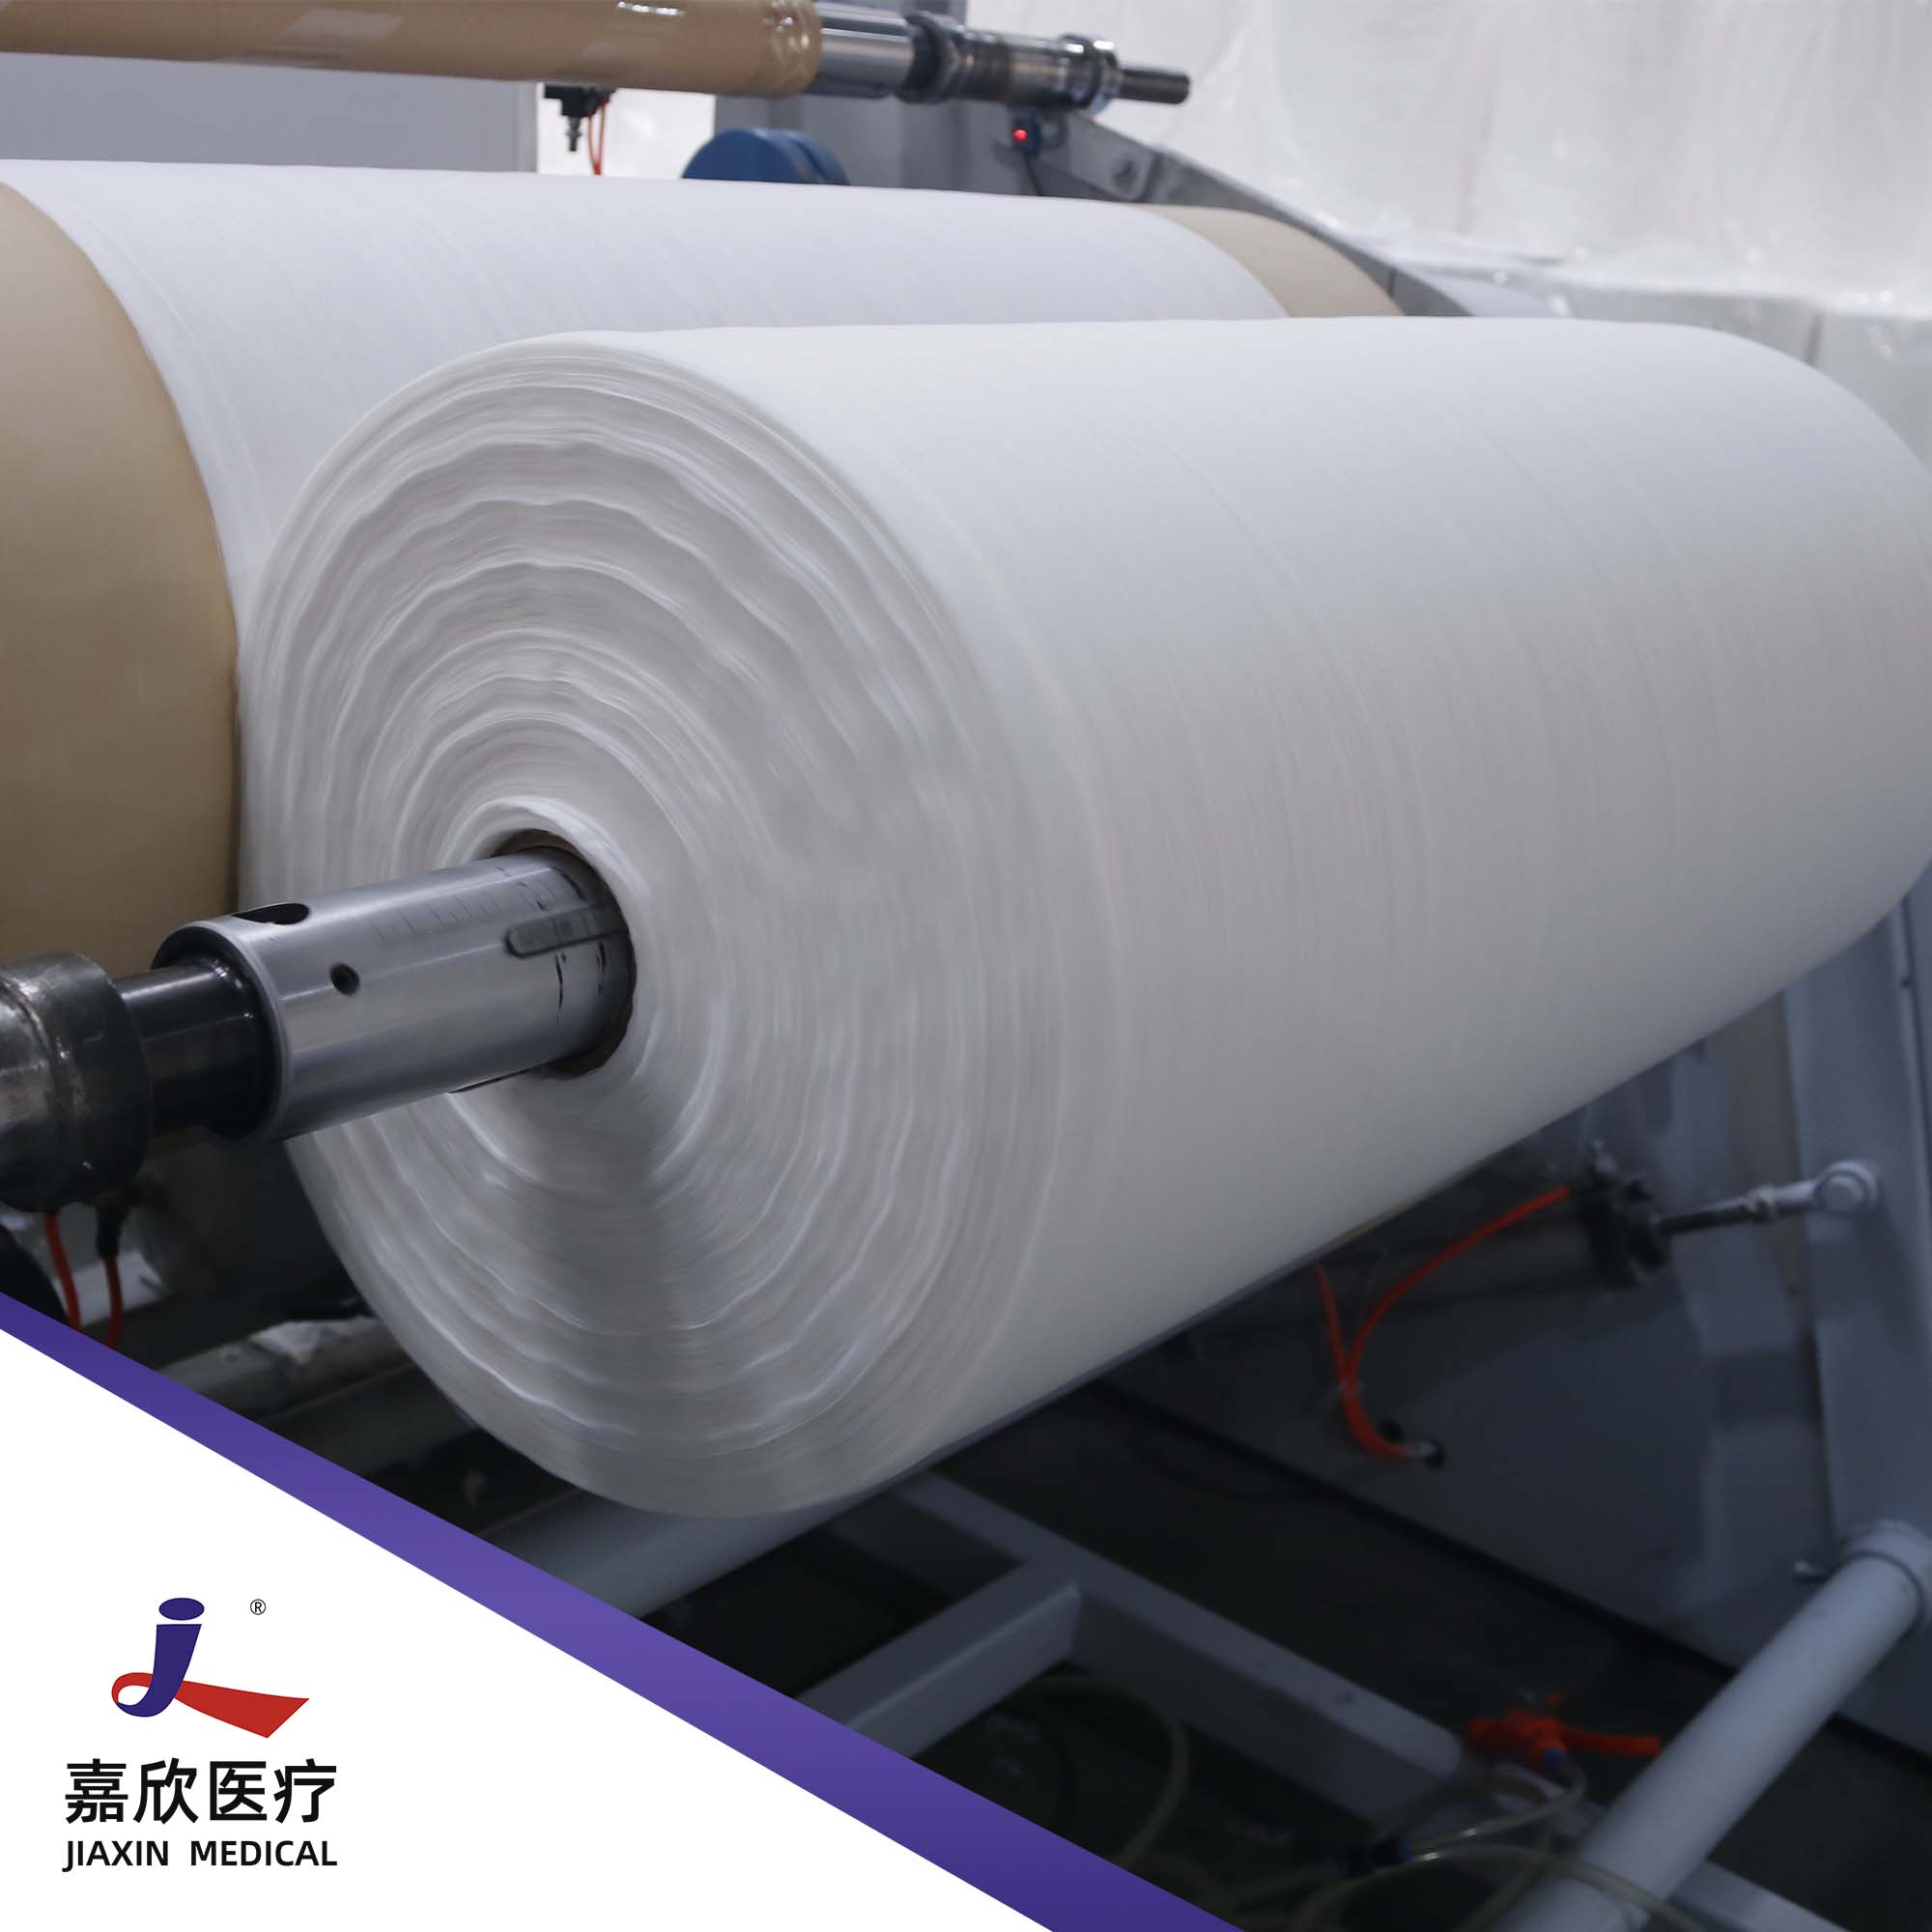 Fabricante de algodón, viscosa, rayón, poliéster PET, rollo de tela no tejida Spunlace de bambú para almohadillas redondas de algodón